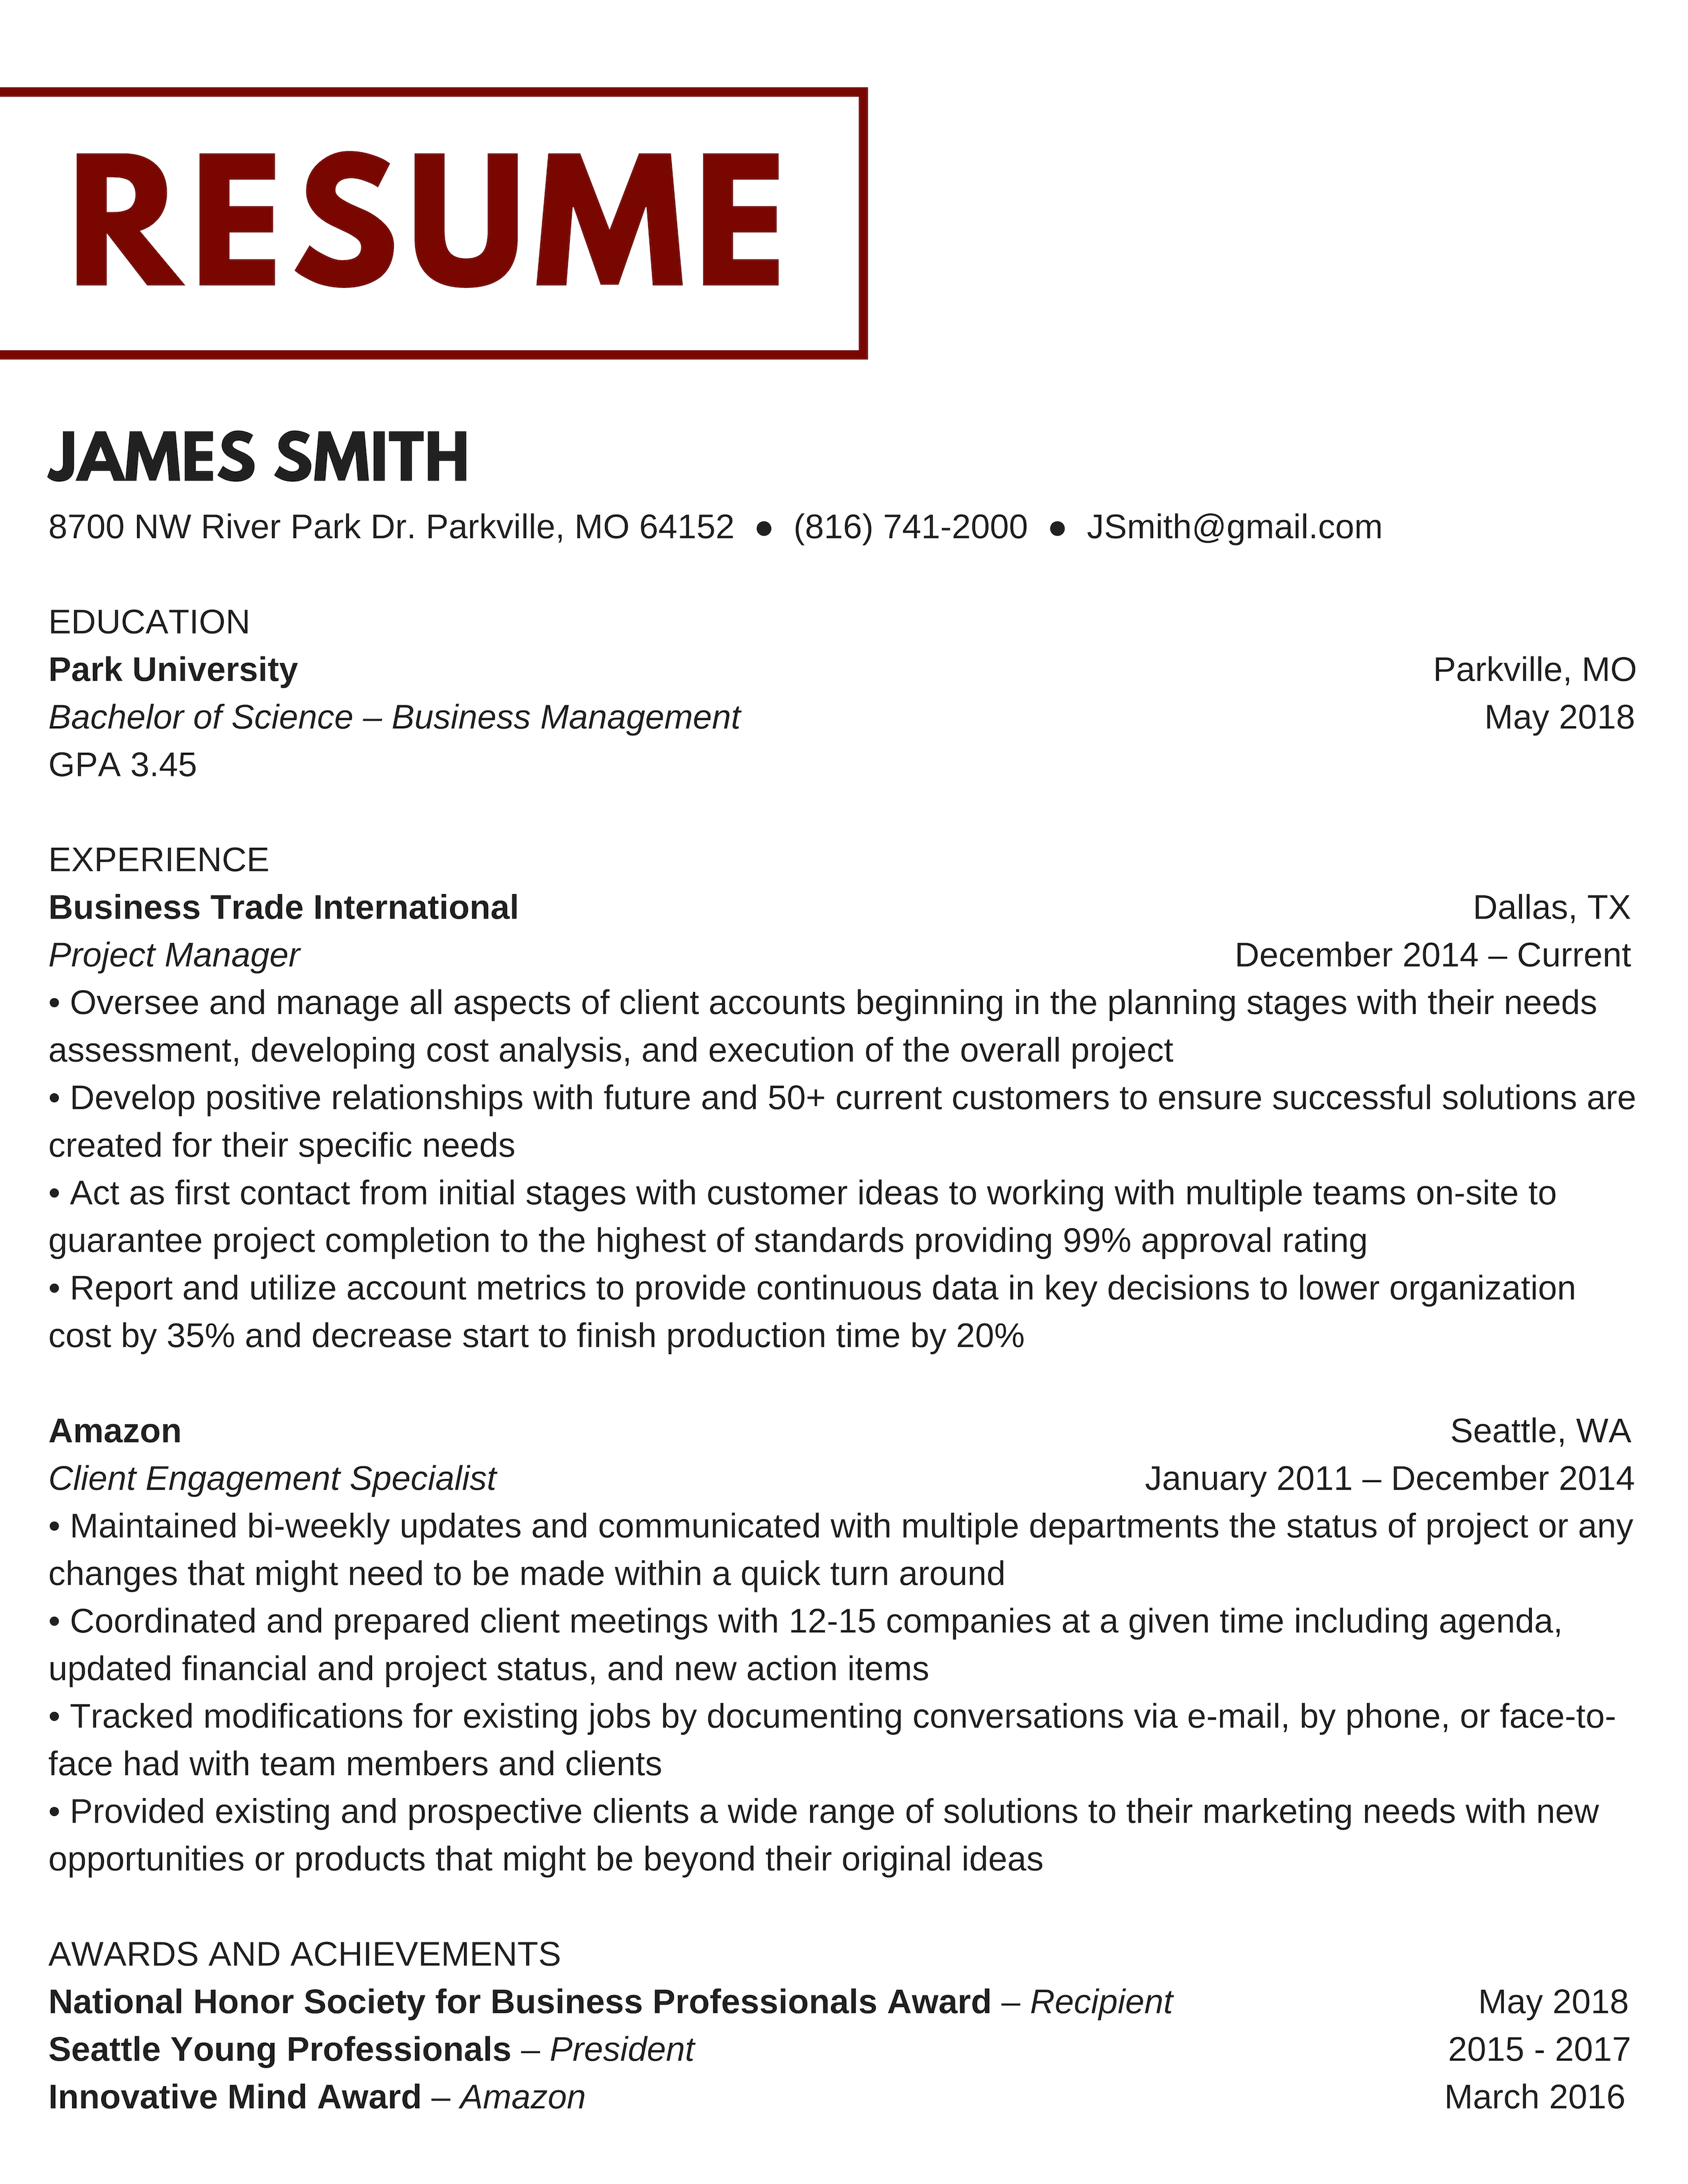 How To Do A Resume Resume how to do a resume|wikiresume.com